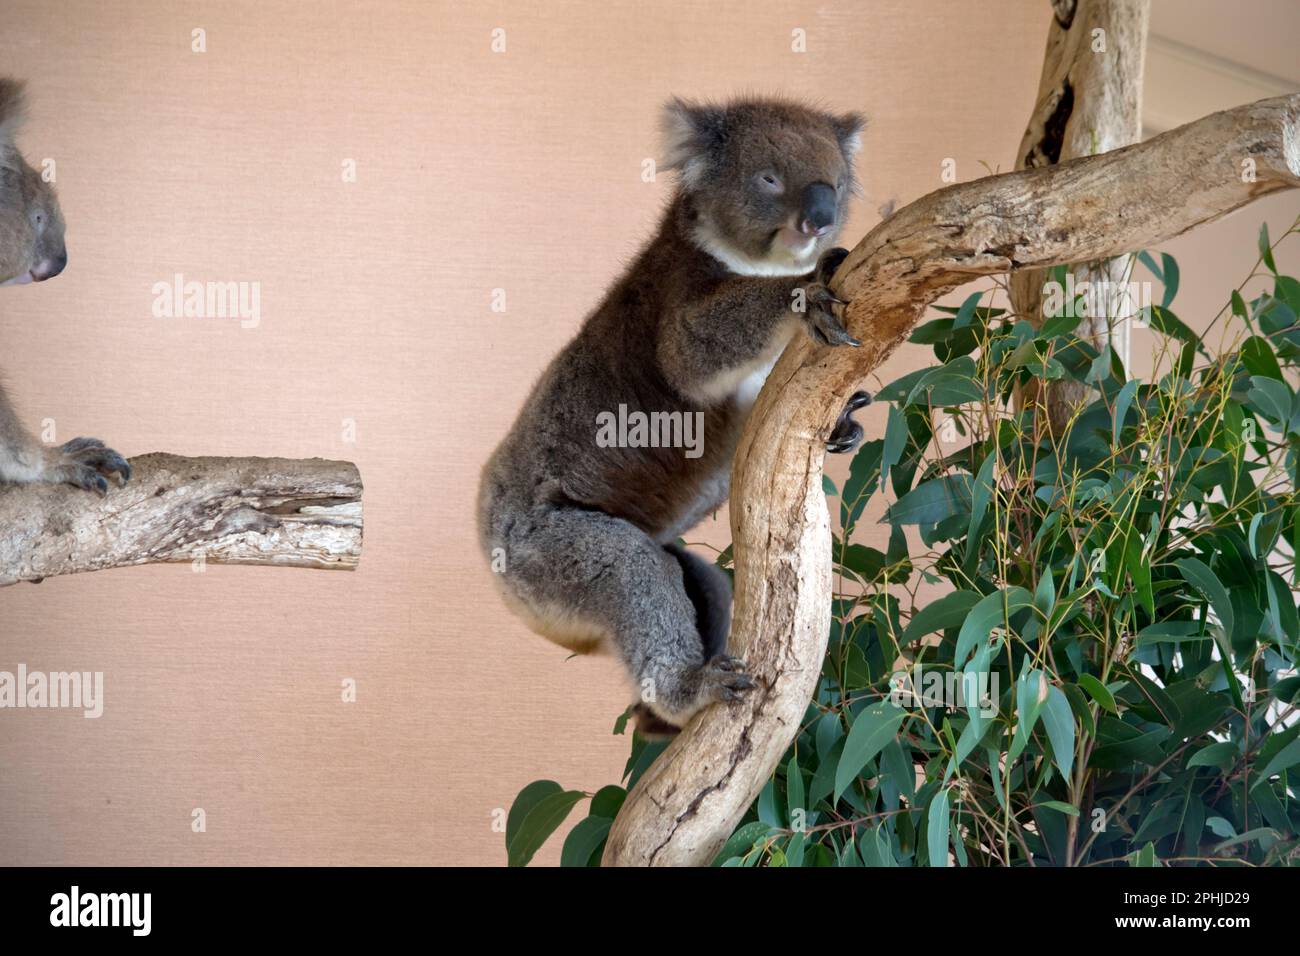 Les Koala ont une grande tête ronde, de grandes oreilles de fourrure et un gros nez noir. Leur fourrure est habituellement de couleur gris-brun avec la fourrure blanche sur la poitrine, les bras intérieurs, Banque D'Images